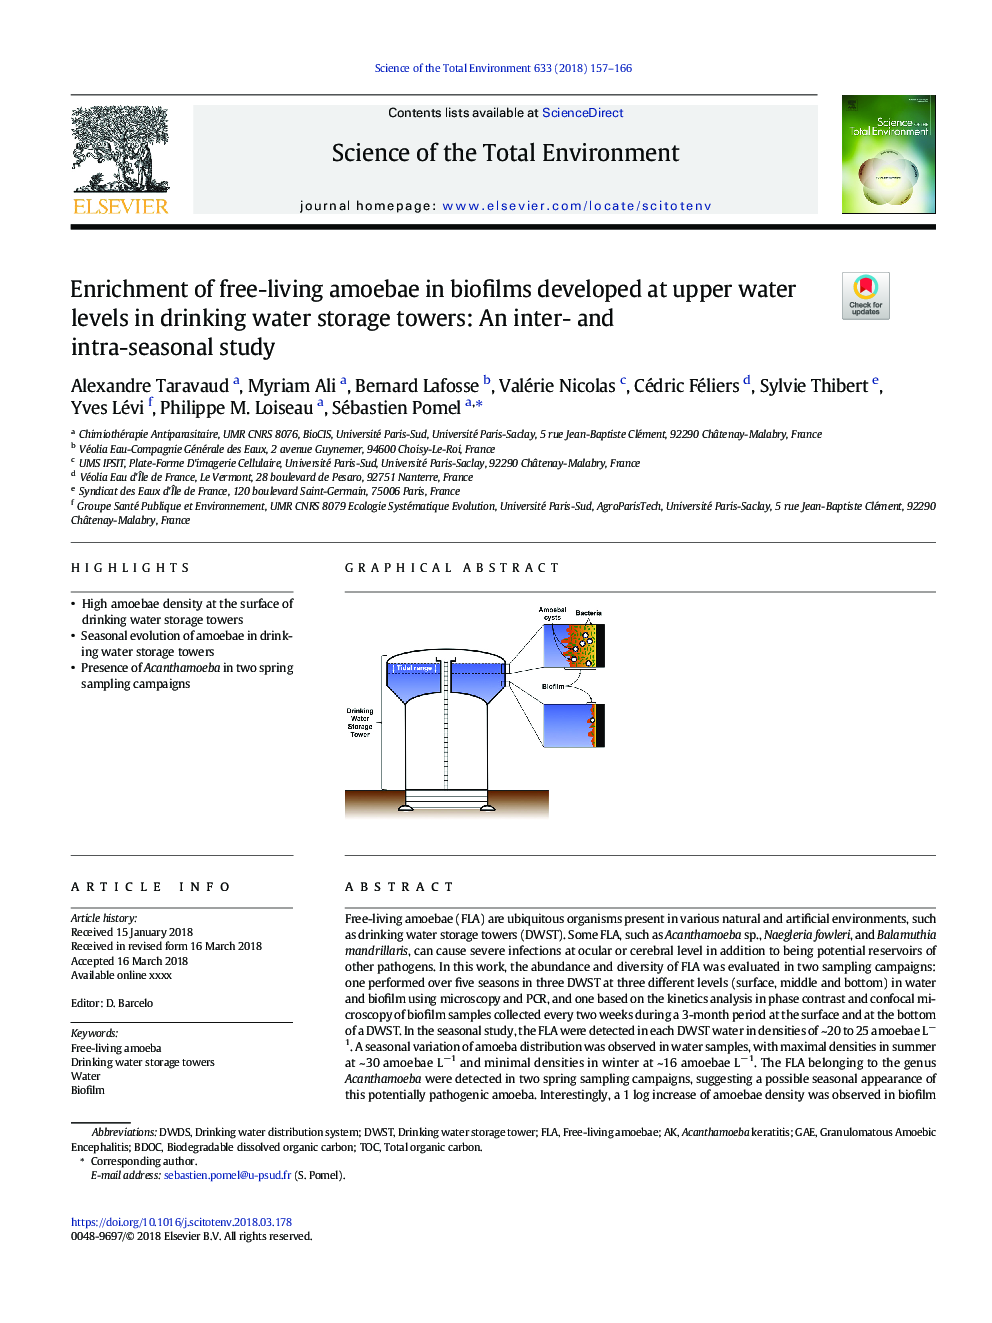 غنی سازی آمیبهای آزاد در بیوفیلم ها در سطوح بالای آب در برج های ذخیره سازی آب آشامیدنی توسعه یافته است: مطالعه بین درون و فصلی 